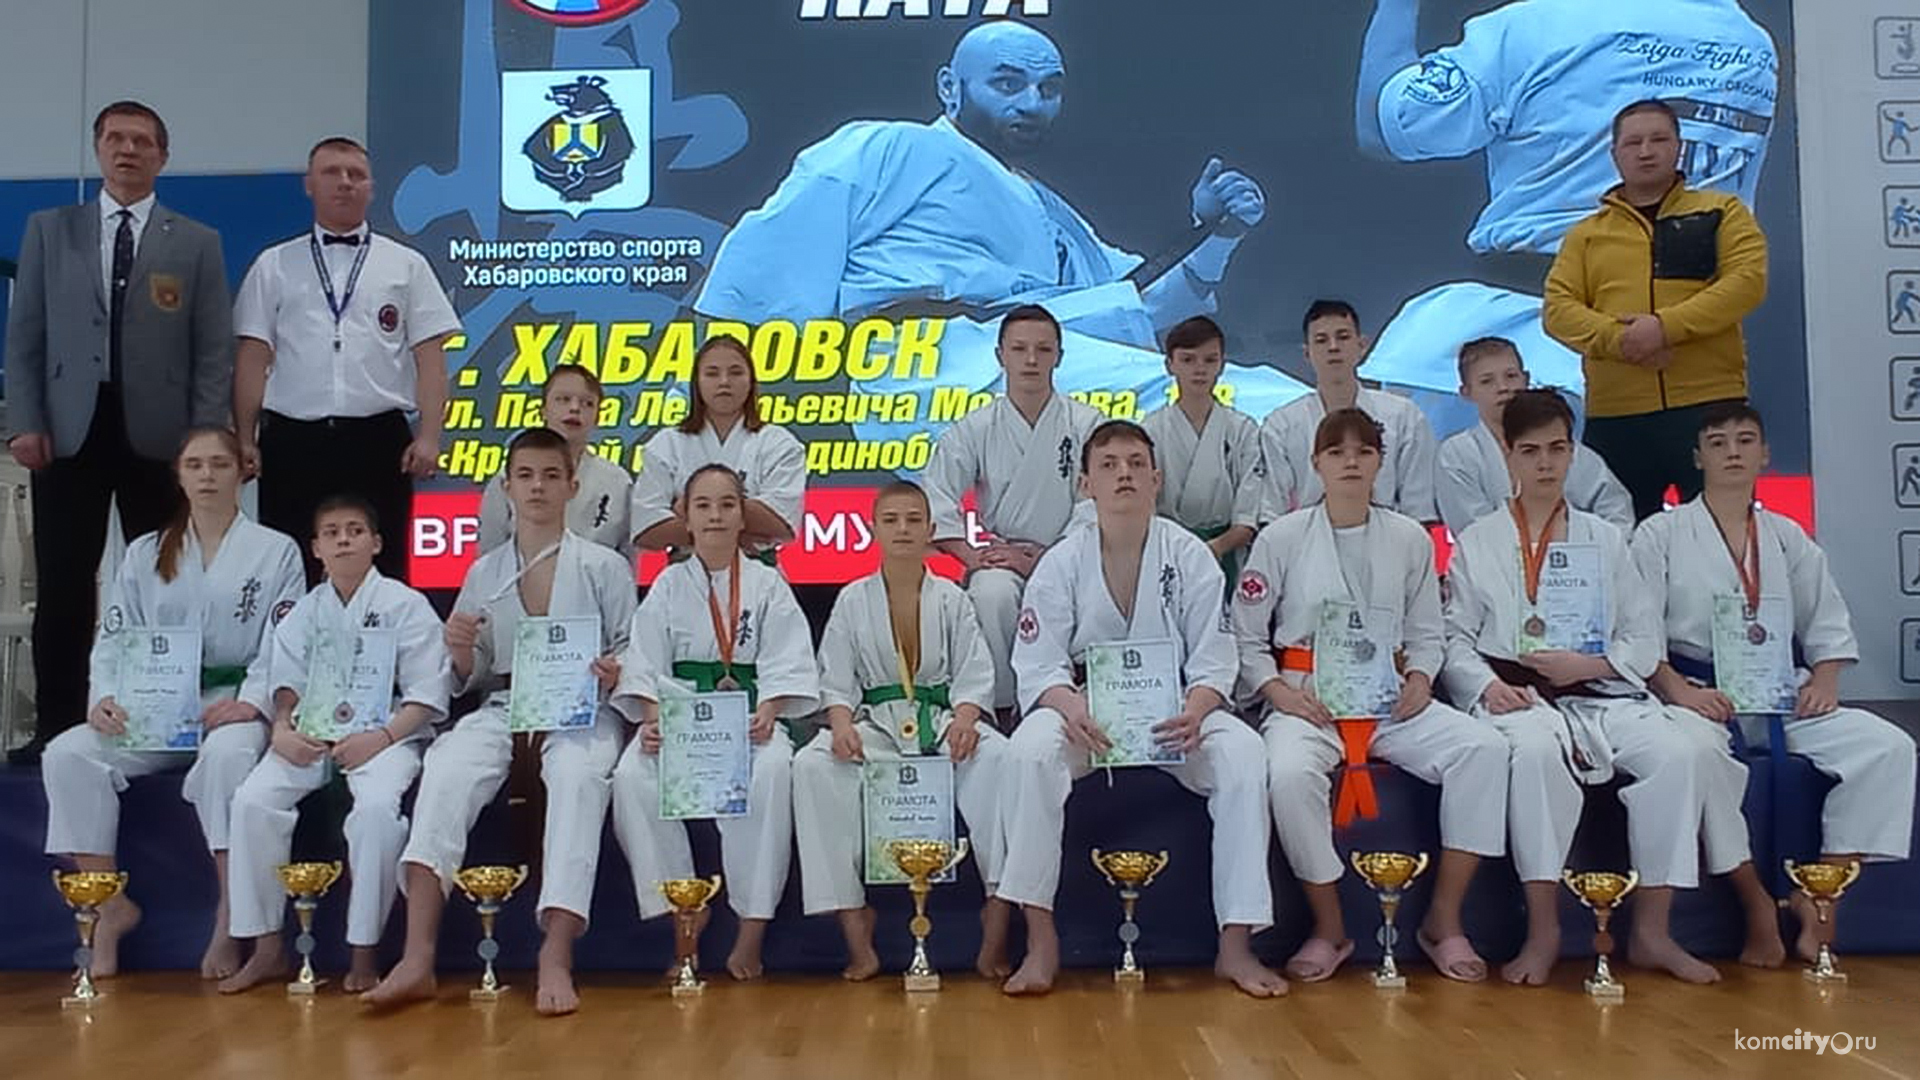 Комсомольчане взяли девять медалей на масштабных соревнованиях по киокушин в Хабаровске